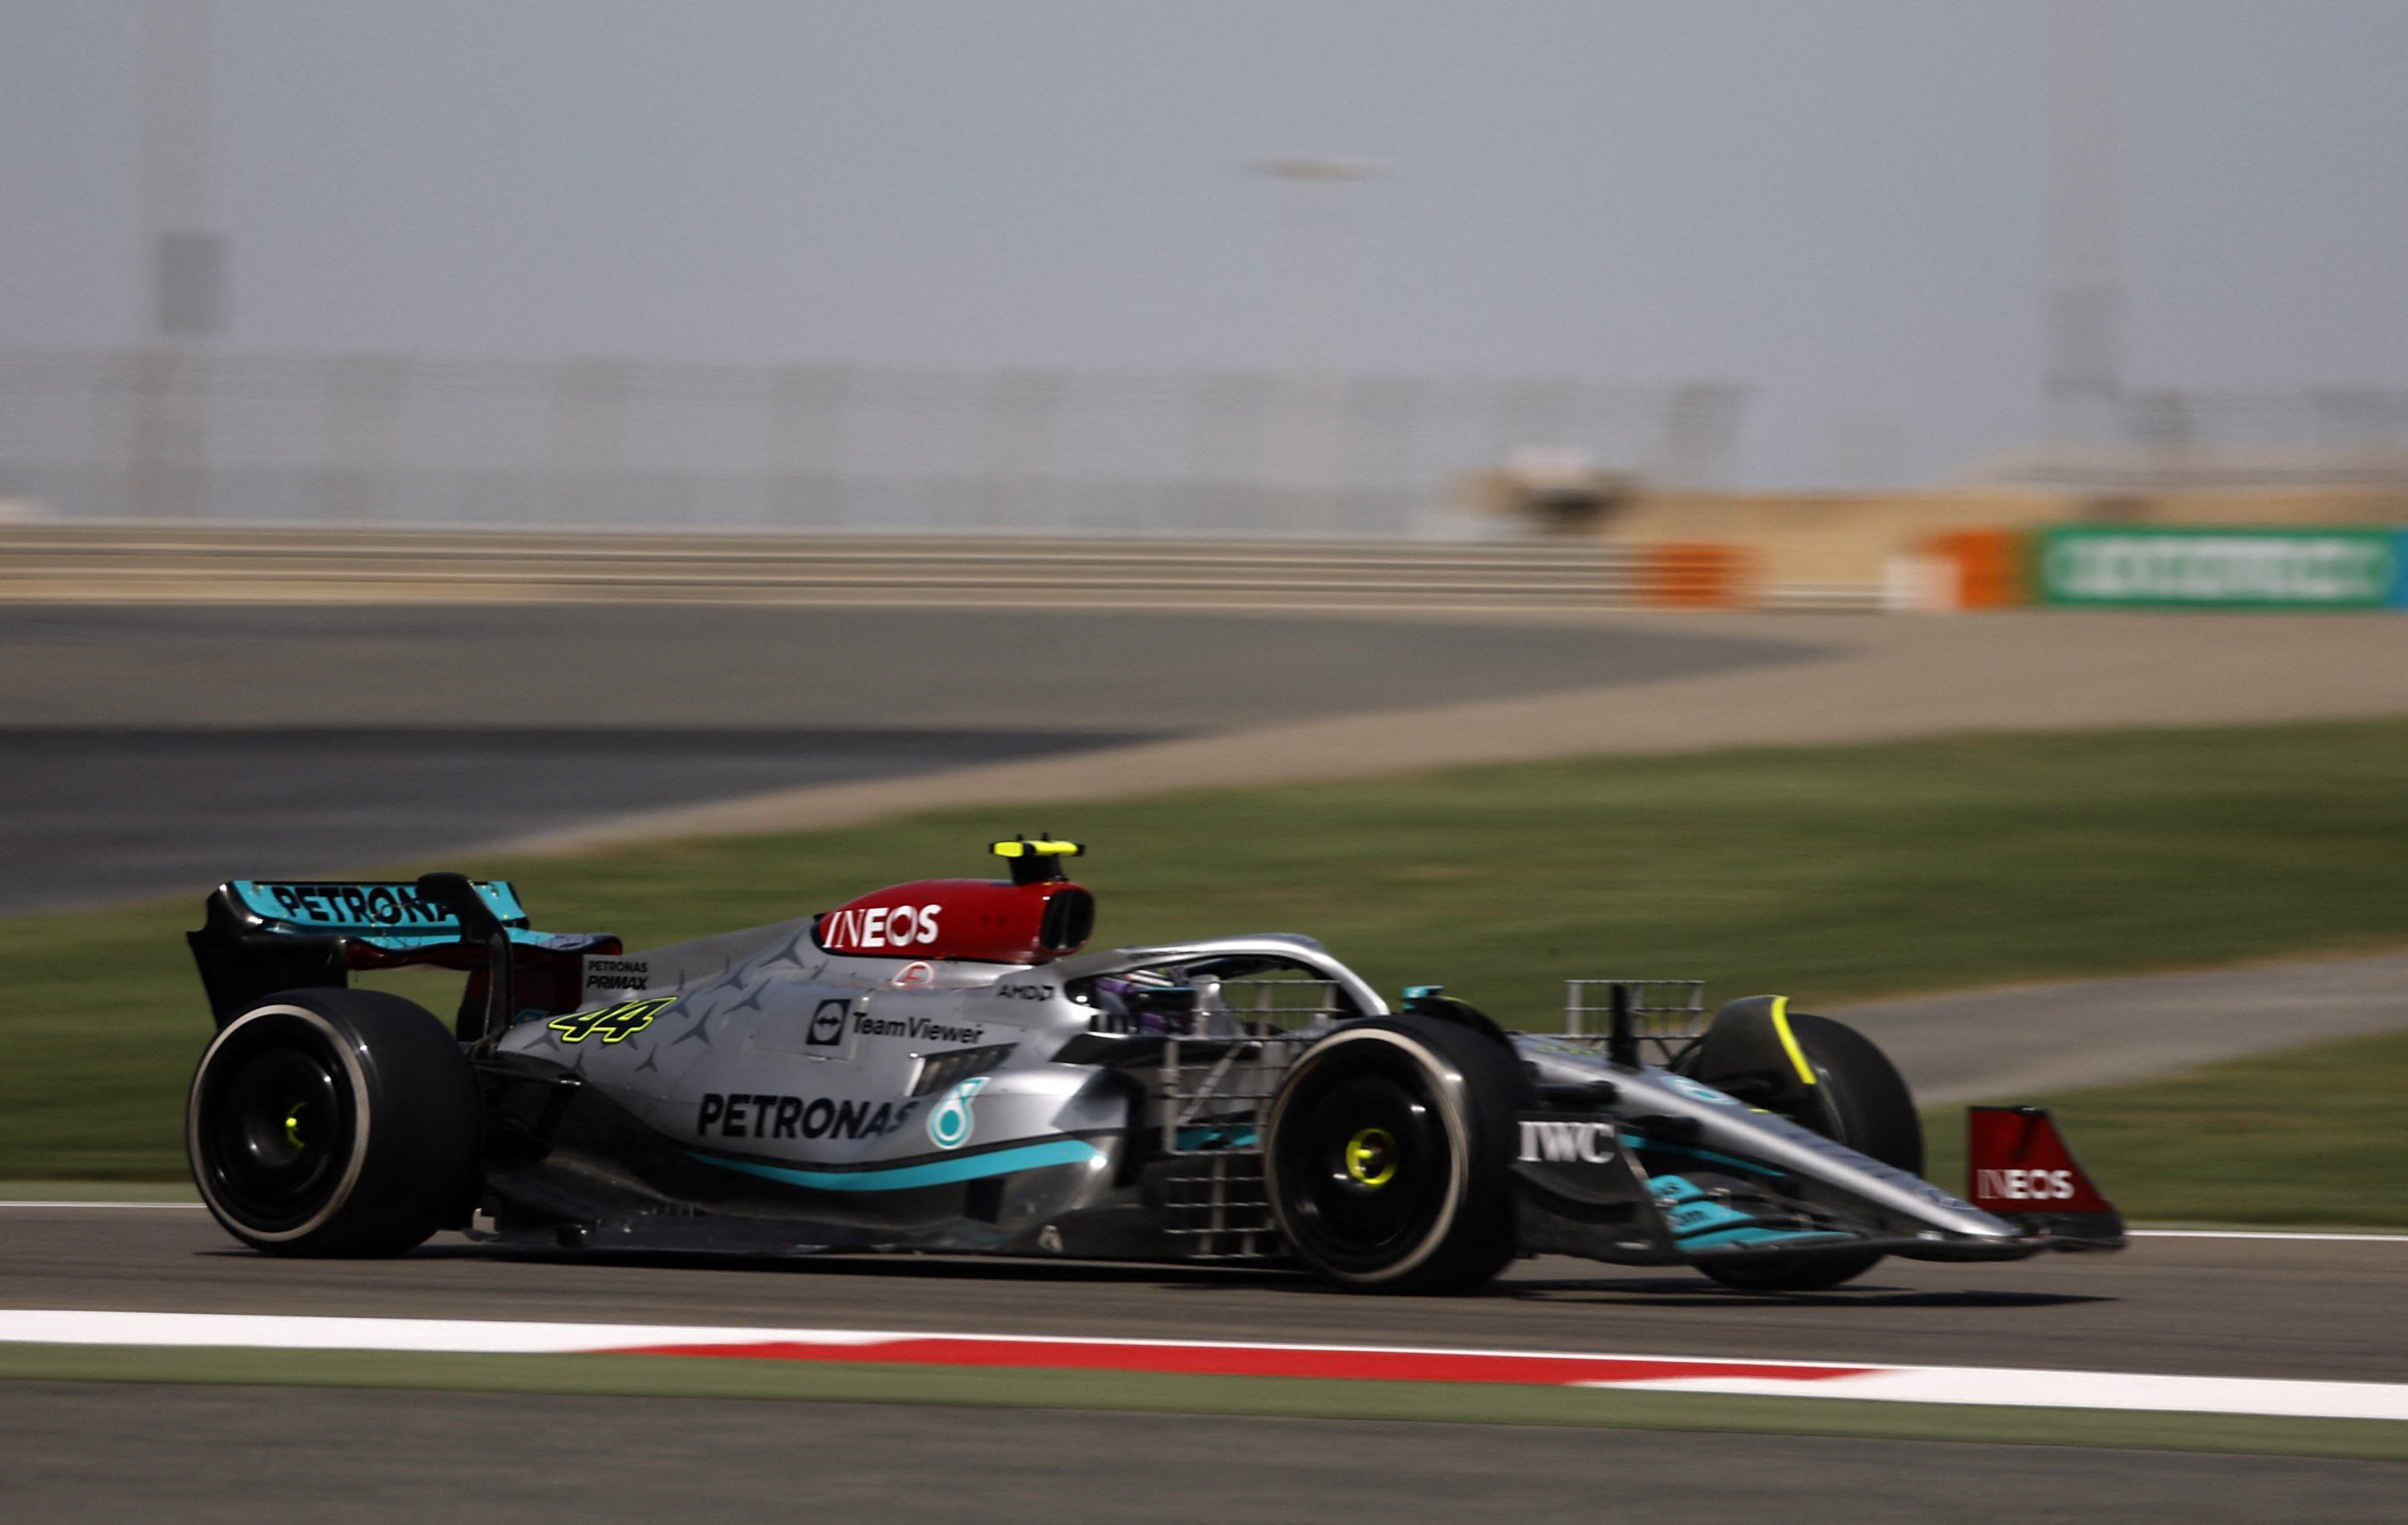 Mercedes ‘still have work to do’: Hamilton